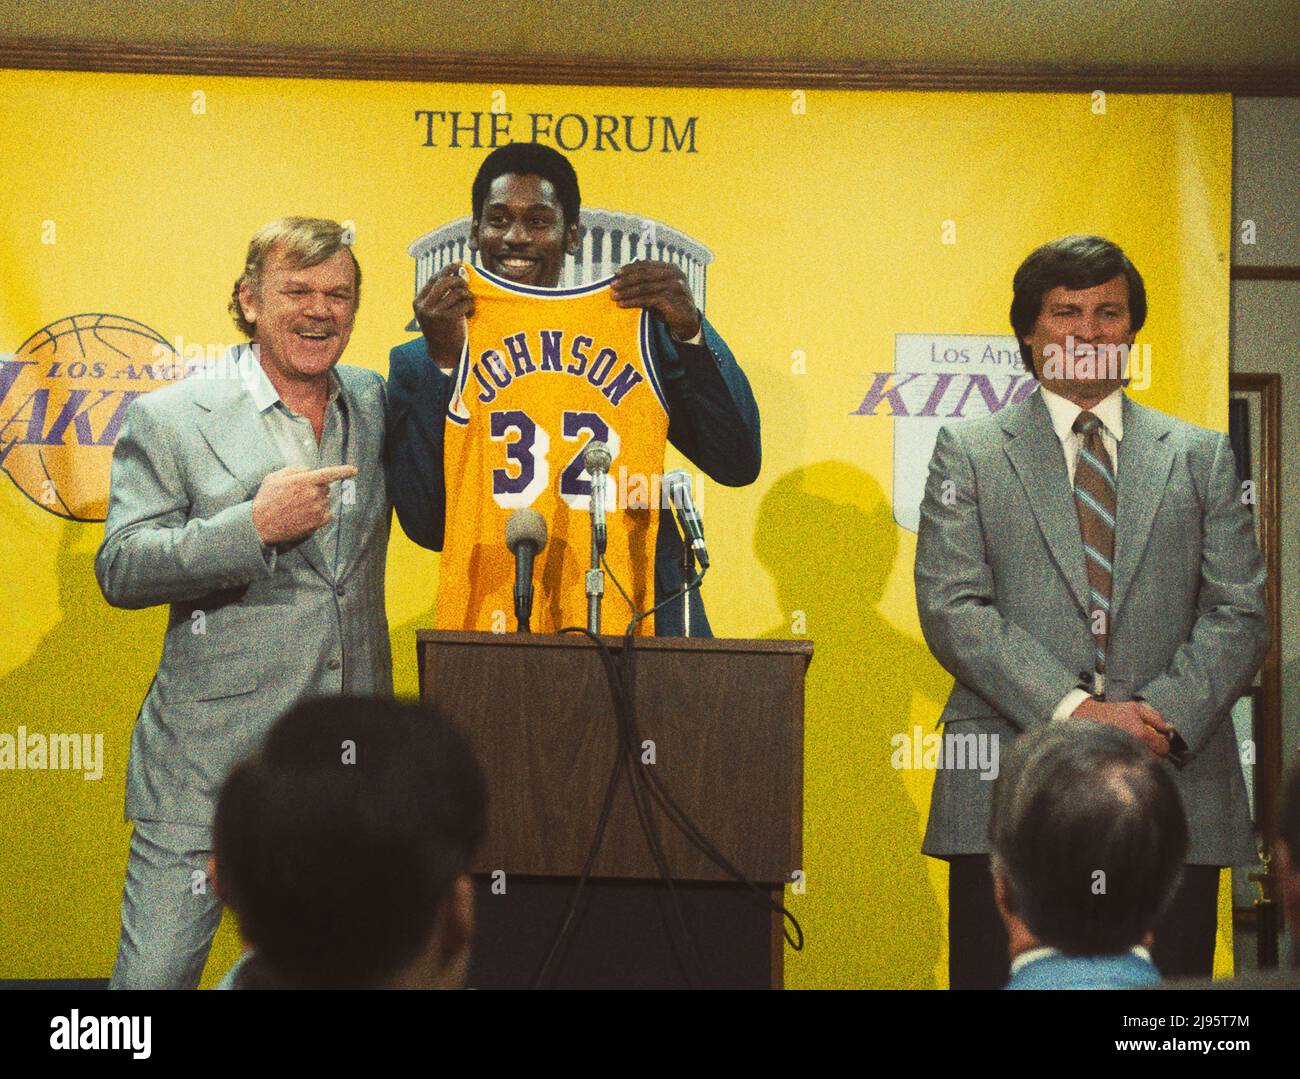 Temps gagnant: La montée de la dynastie des Lakers (séries télé): John C. Reilly comme Jerry bus, Quincy Isaïe comme Magic Johnson, Jason Clarke comme Jerry West Banque D'Images